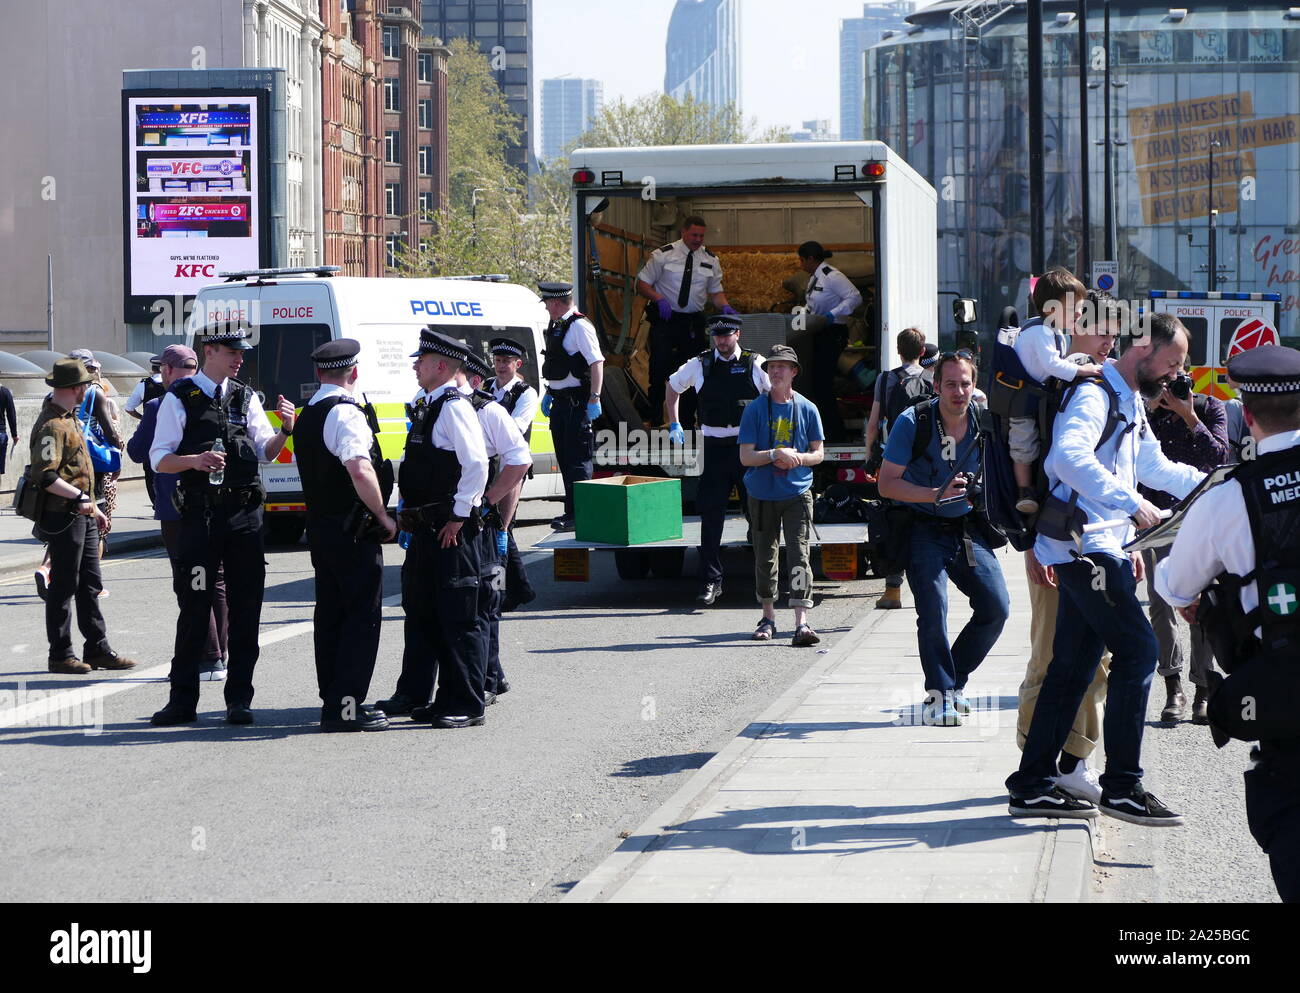 Supprimer la police meubles obstructive comme rébellion Extinction changement climatique manifestants protester de façon pacifique, en occupant le pont de Waterloo, à Londres. 20 avril 2019 Banque D'Images